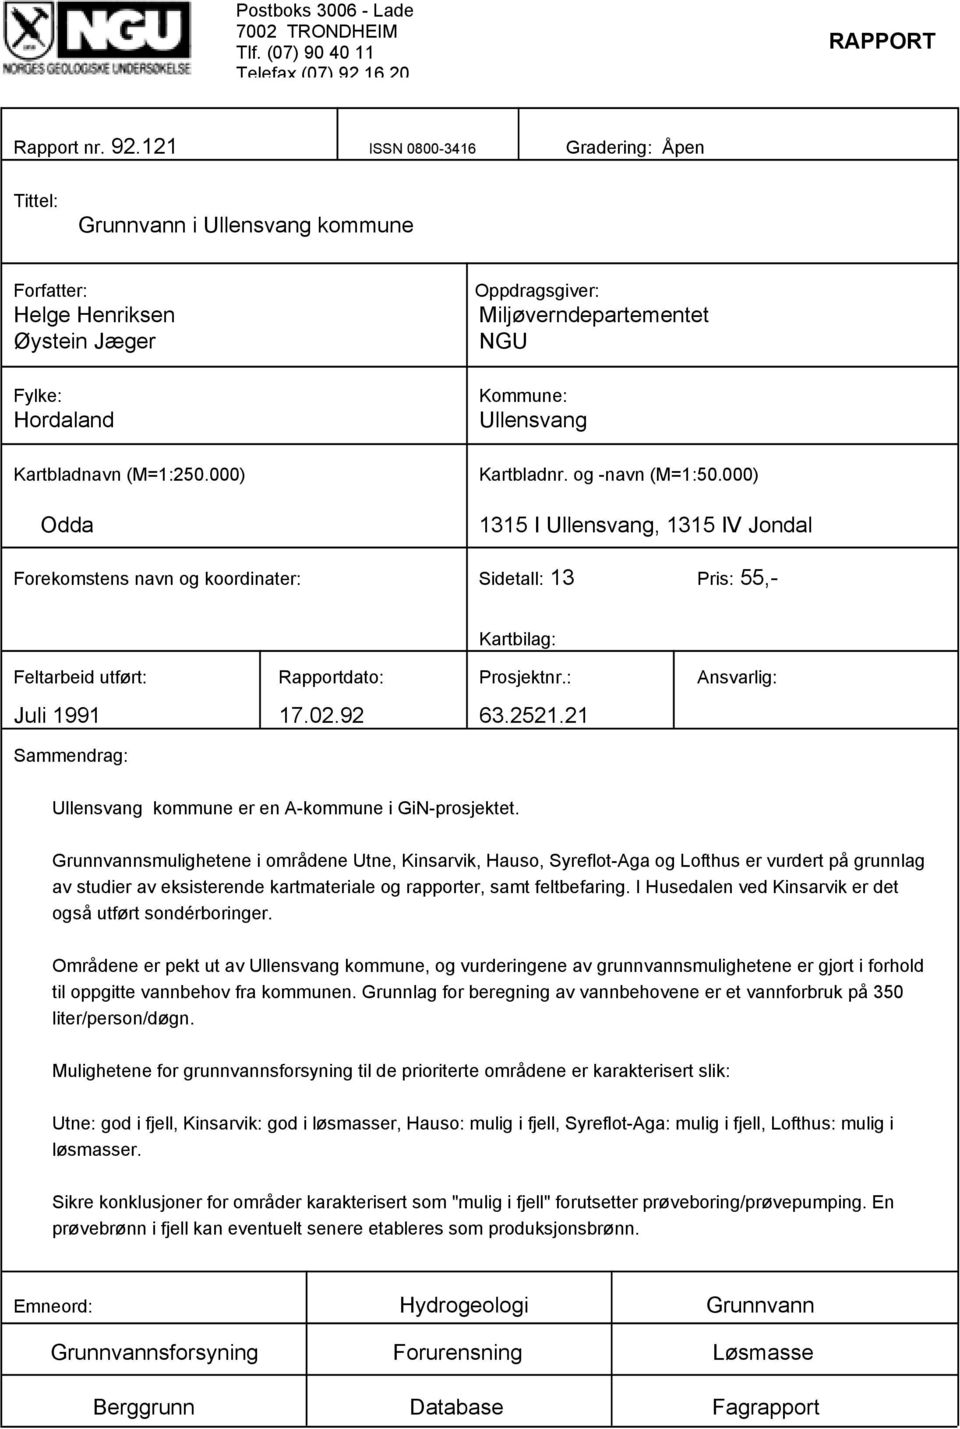 000) Odda Oppdragsgiver: Miljøverndepartementet NGU Kommune: Ullensvang Kartbladnr. og -navn (M=1:50.